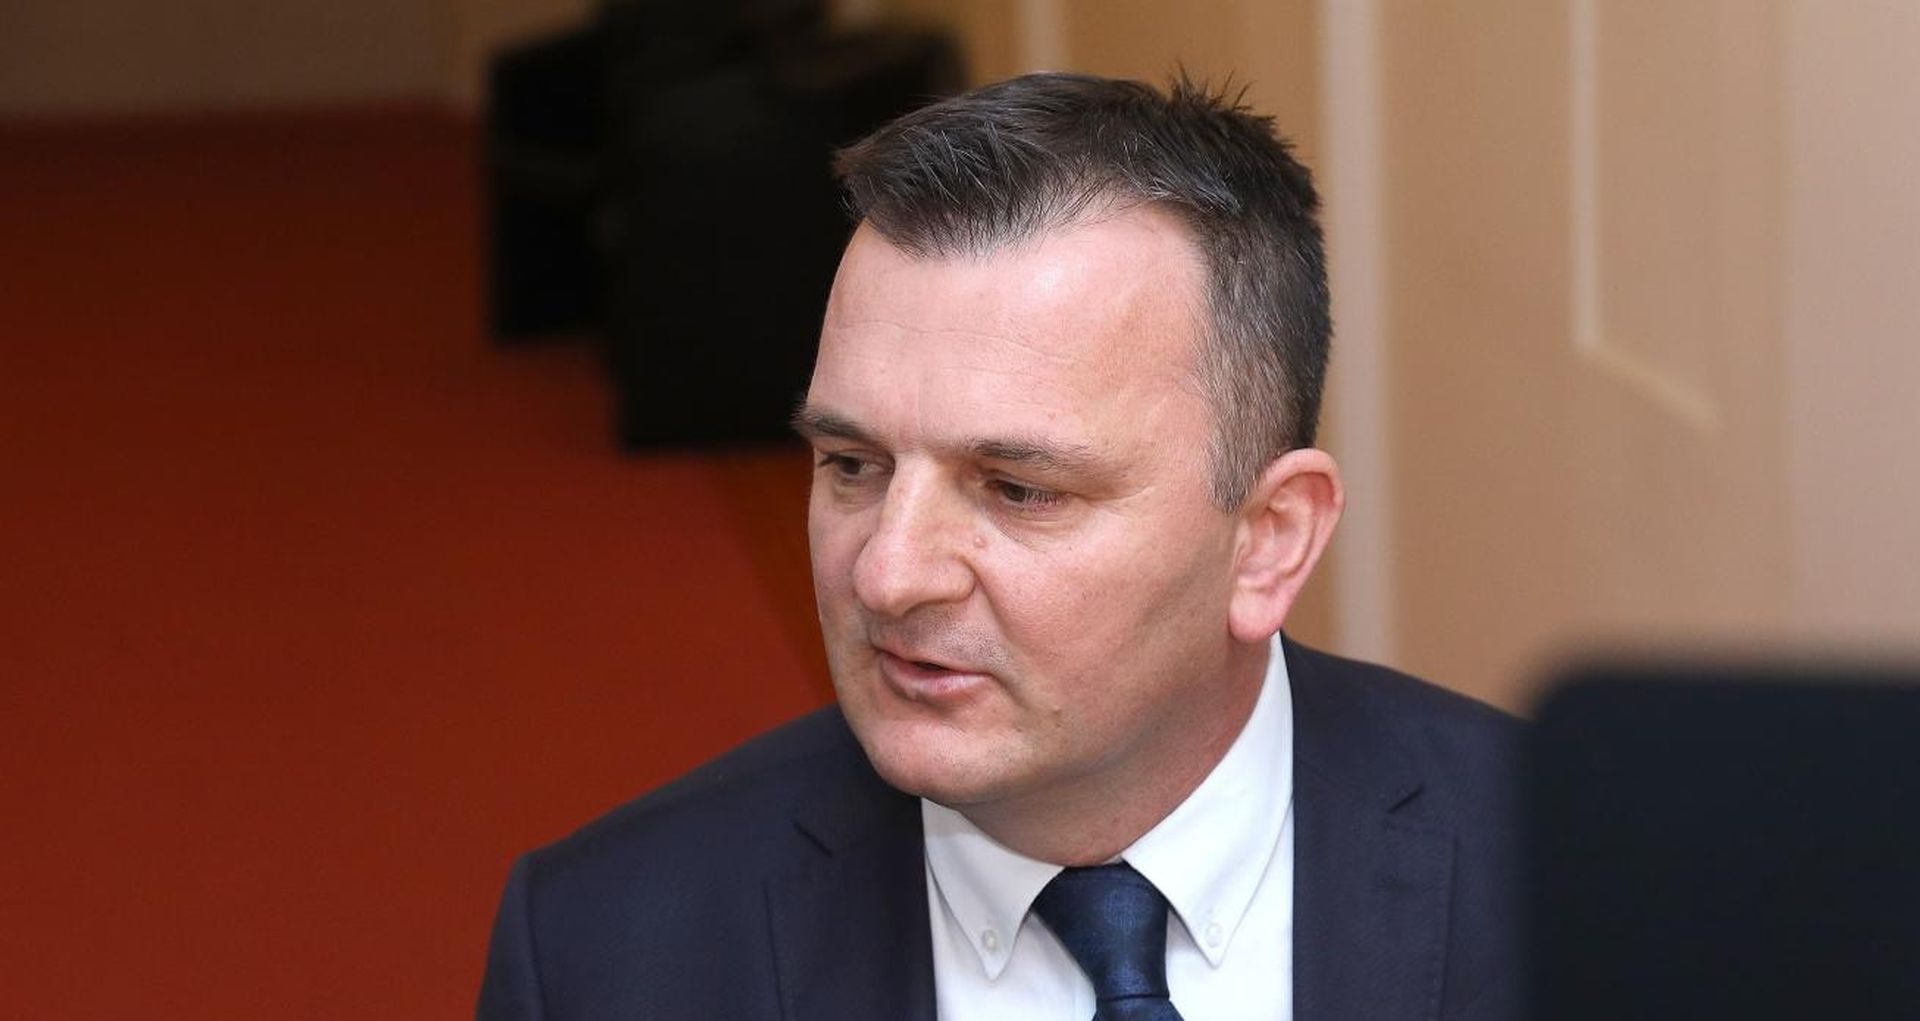 14.02.2020., Zagreb - Petar Skoric komentirao je u Saboru odustajanje od kandidature na stranackim izborima u HDZ-u.
Photo: Patrik Macek/PIXSELL